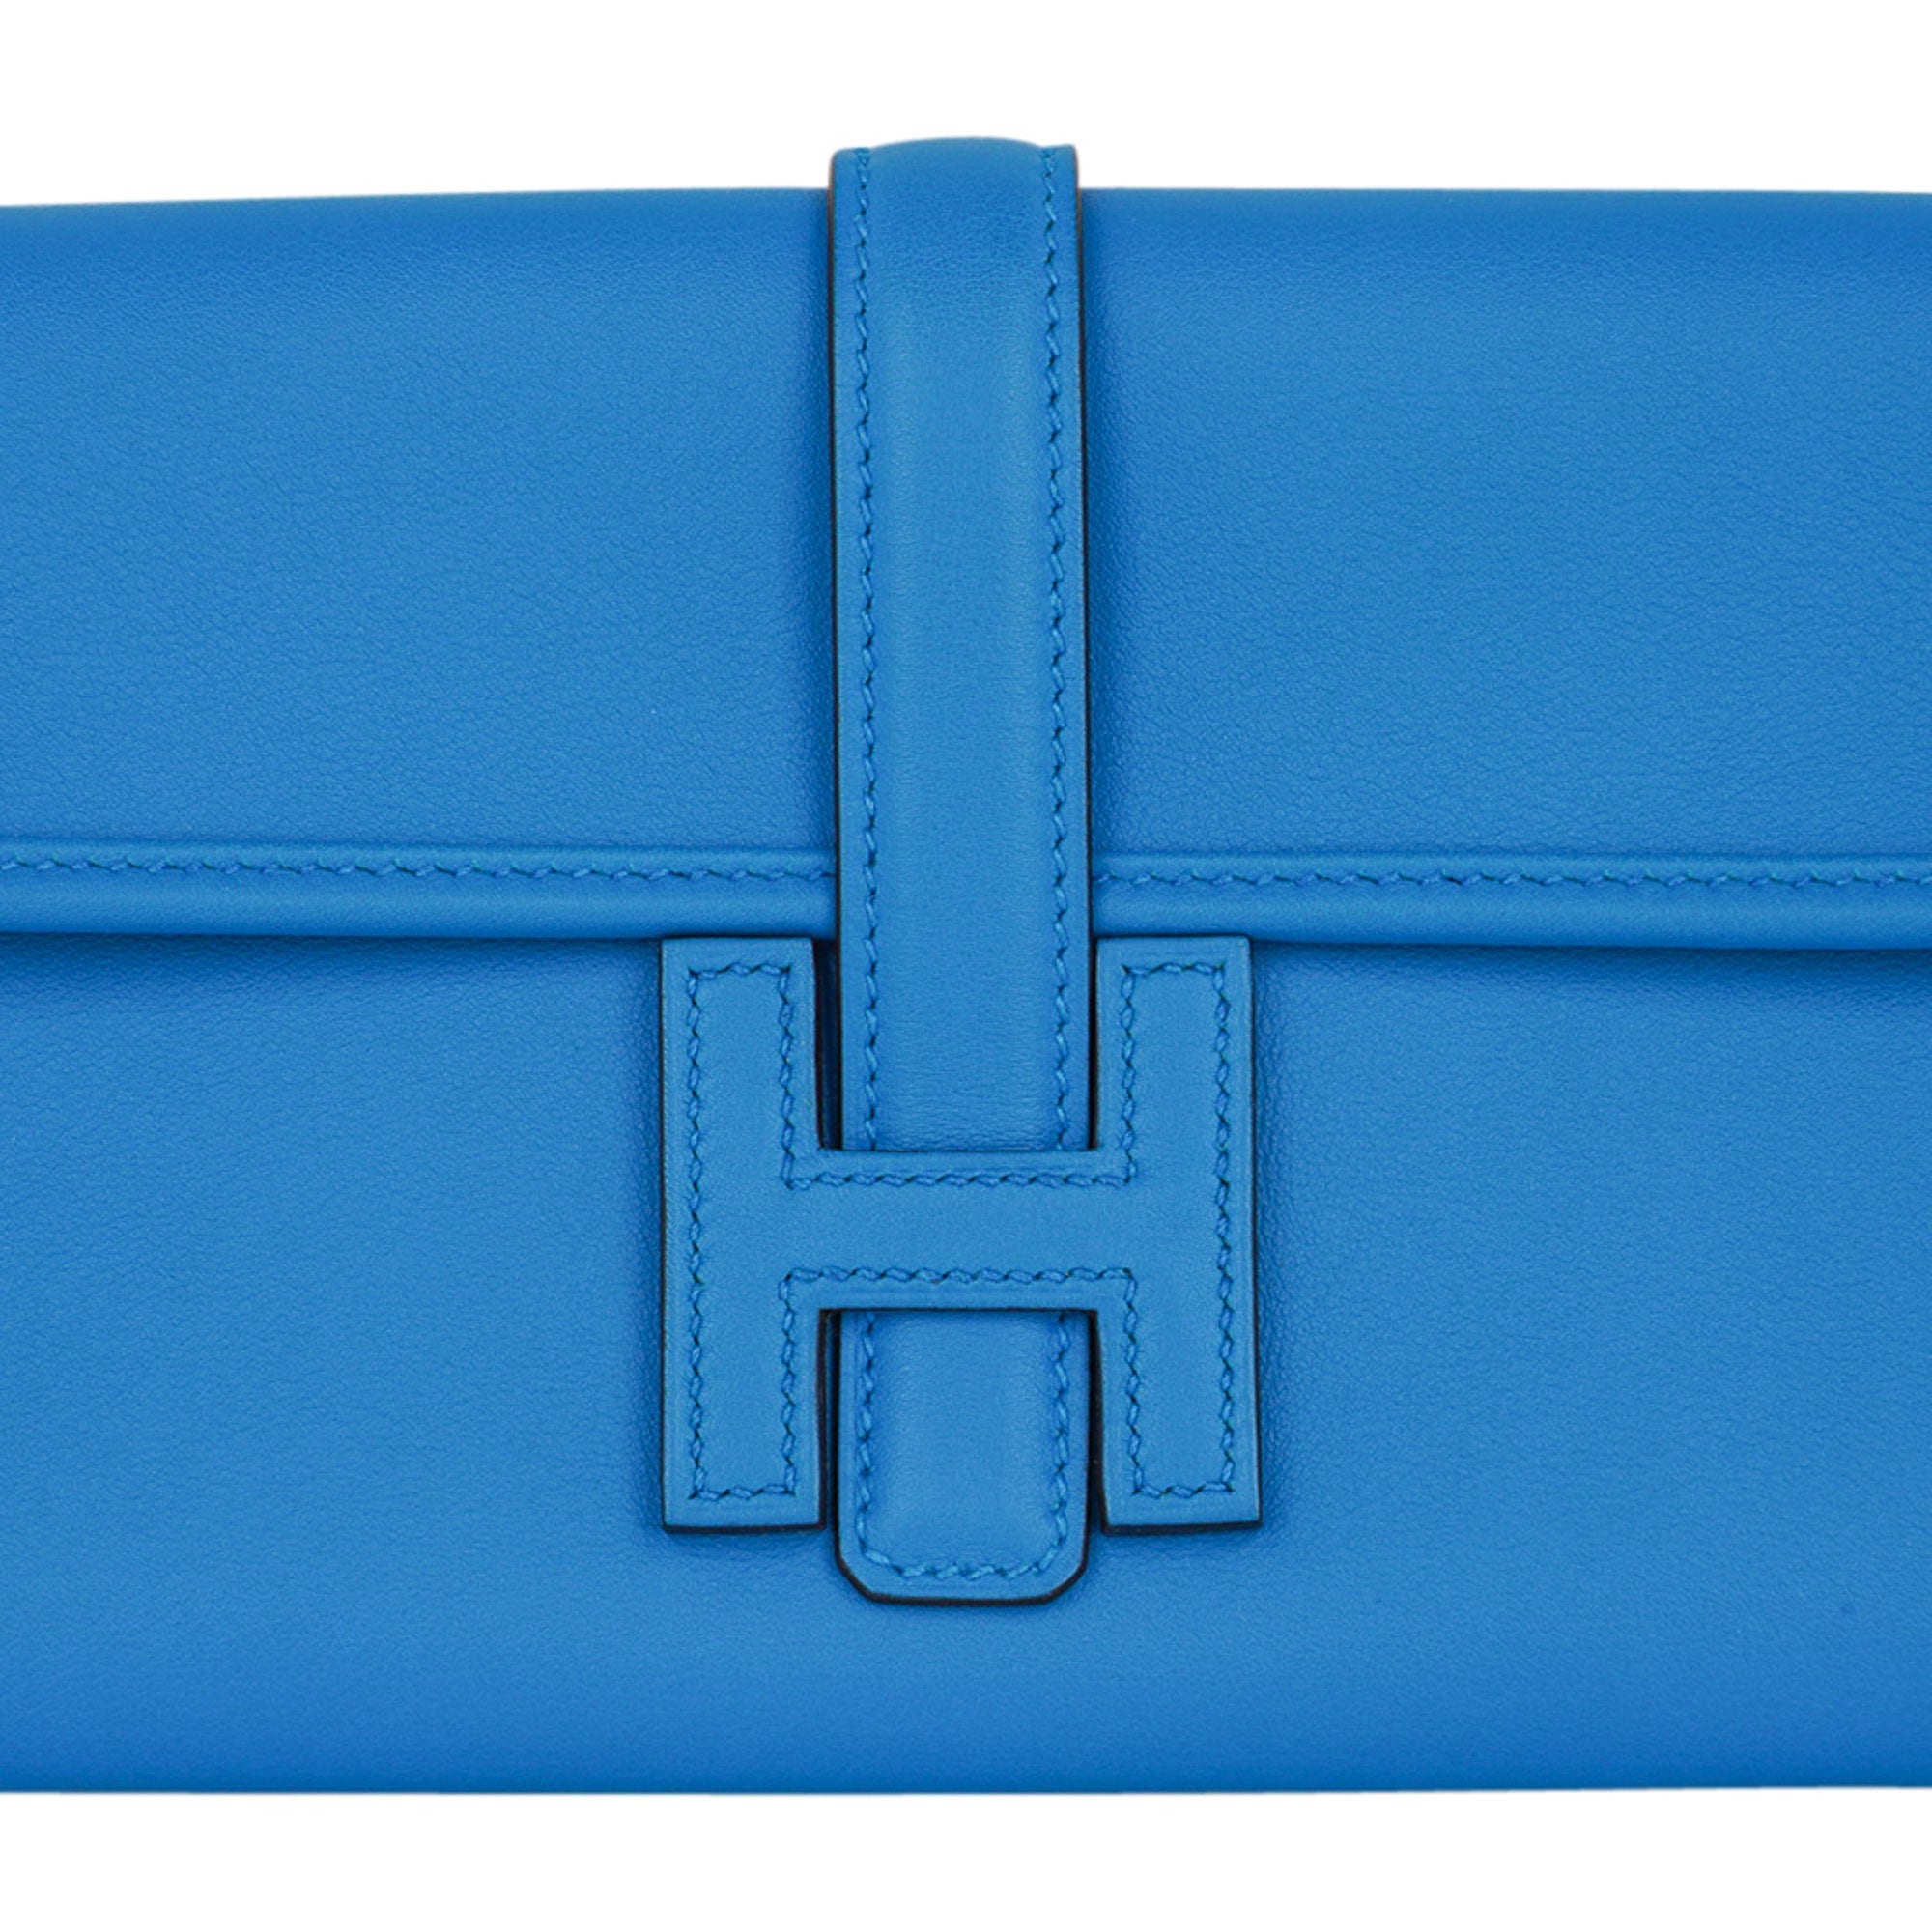 Hermes Jige Duo Wallet / Clutch Blue Zanzibar New w/Box – Mightychic